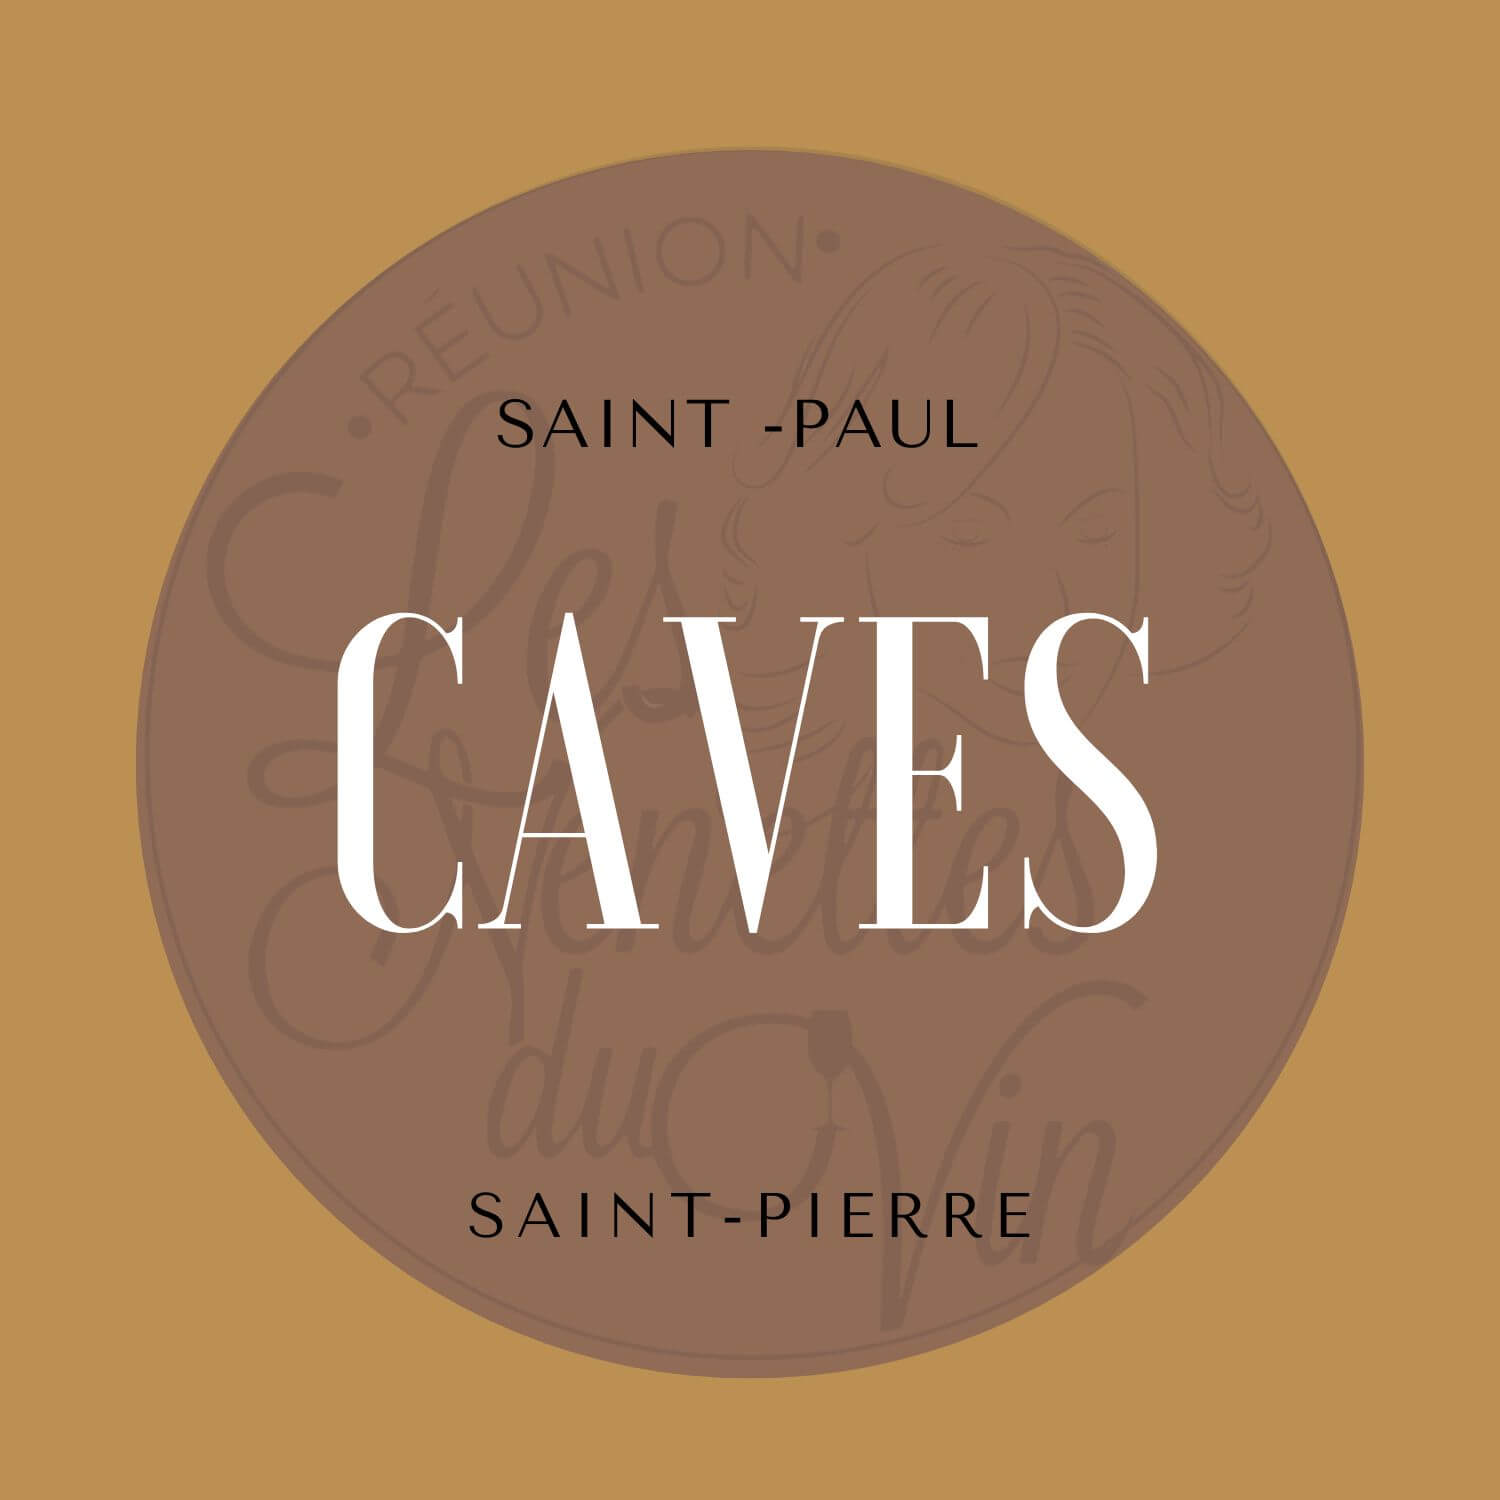 Caves saint pierre saint paul les nenettes du vin